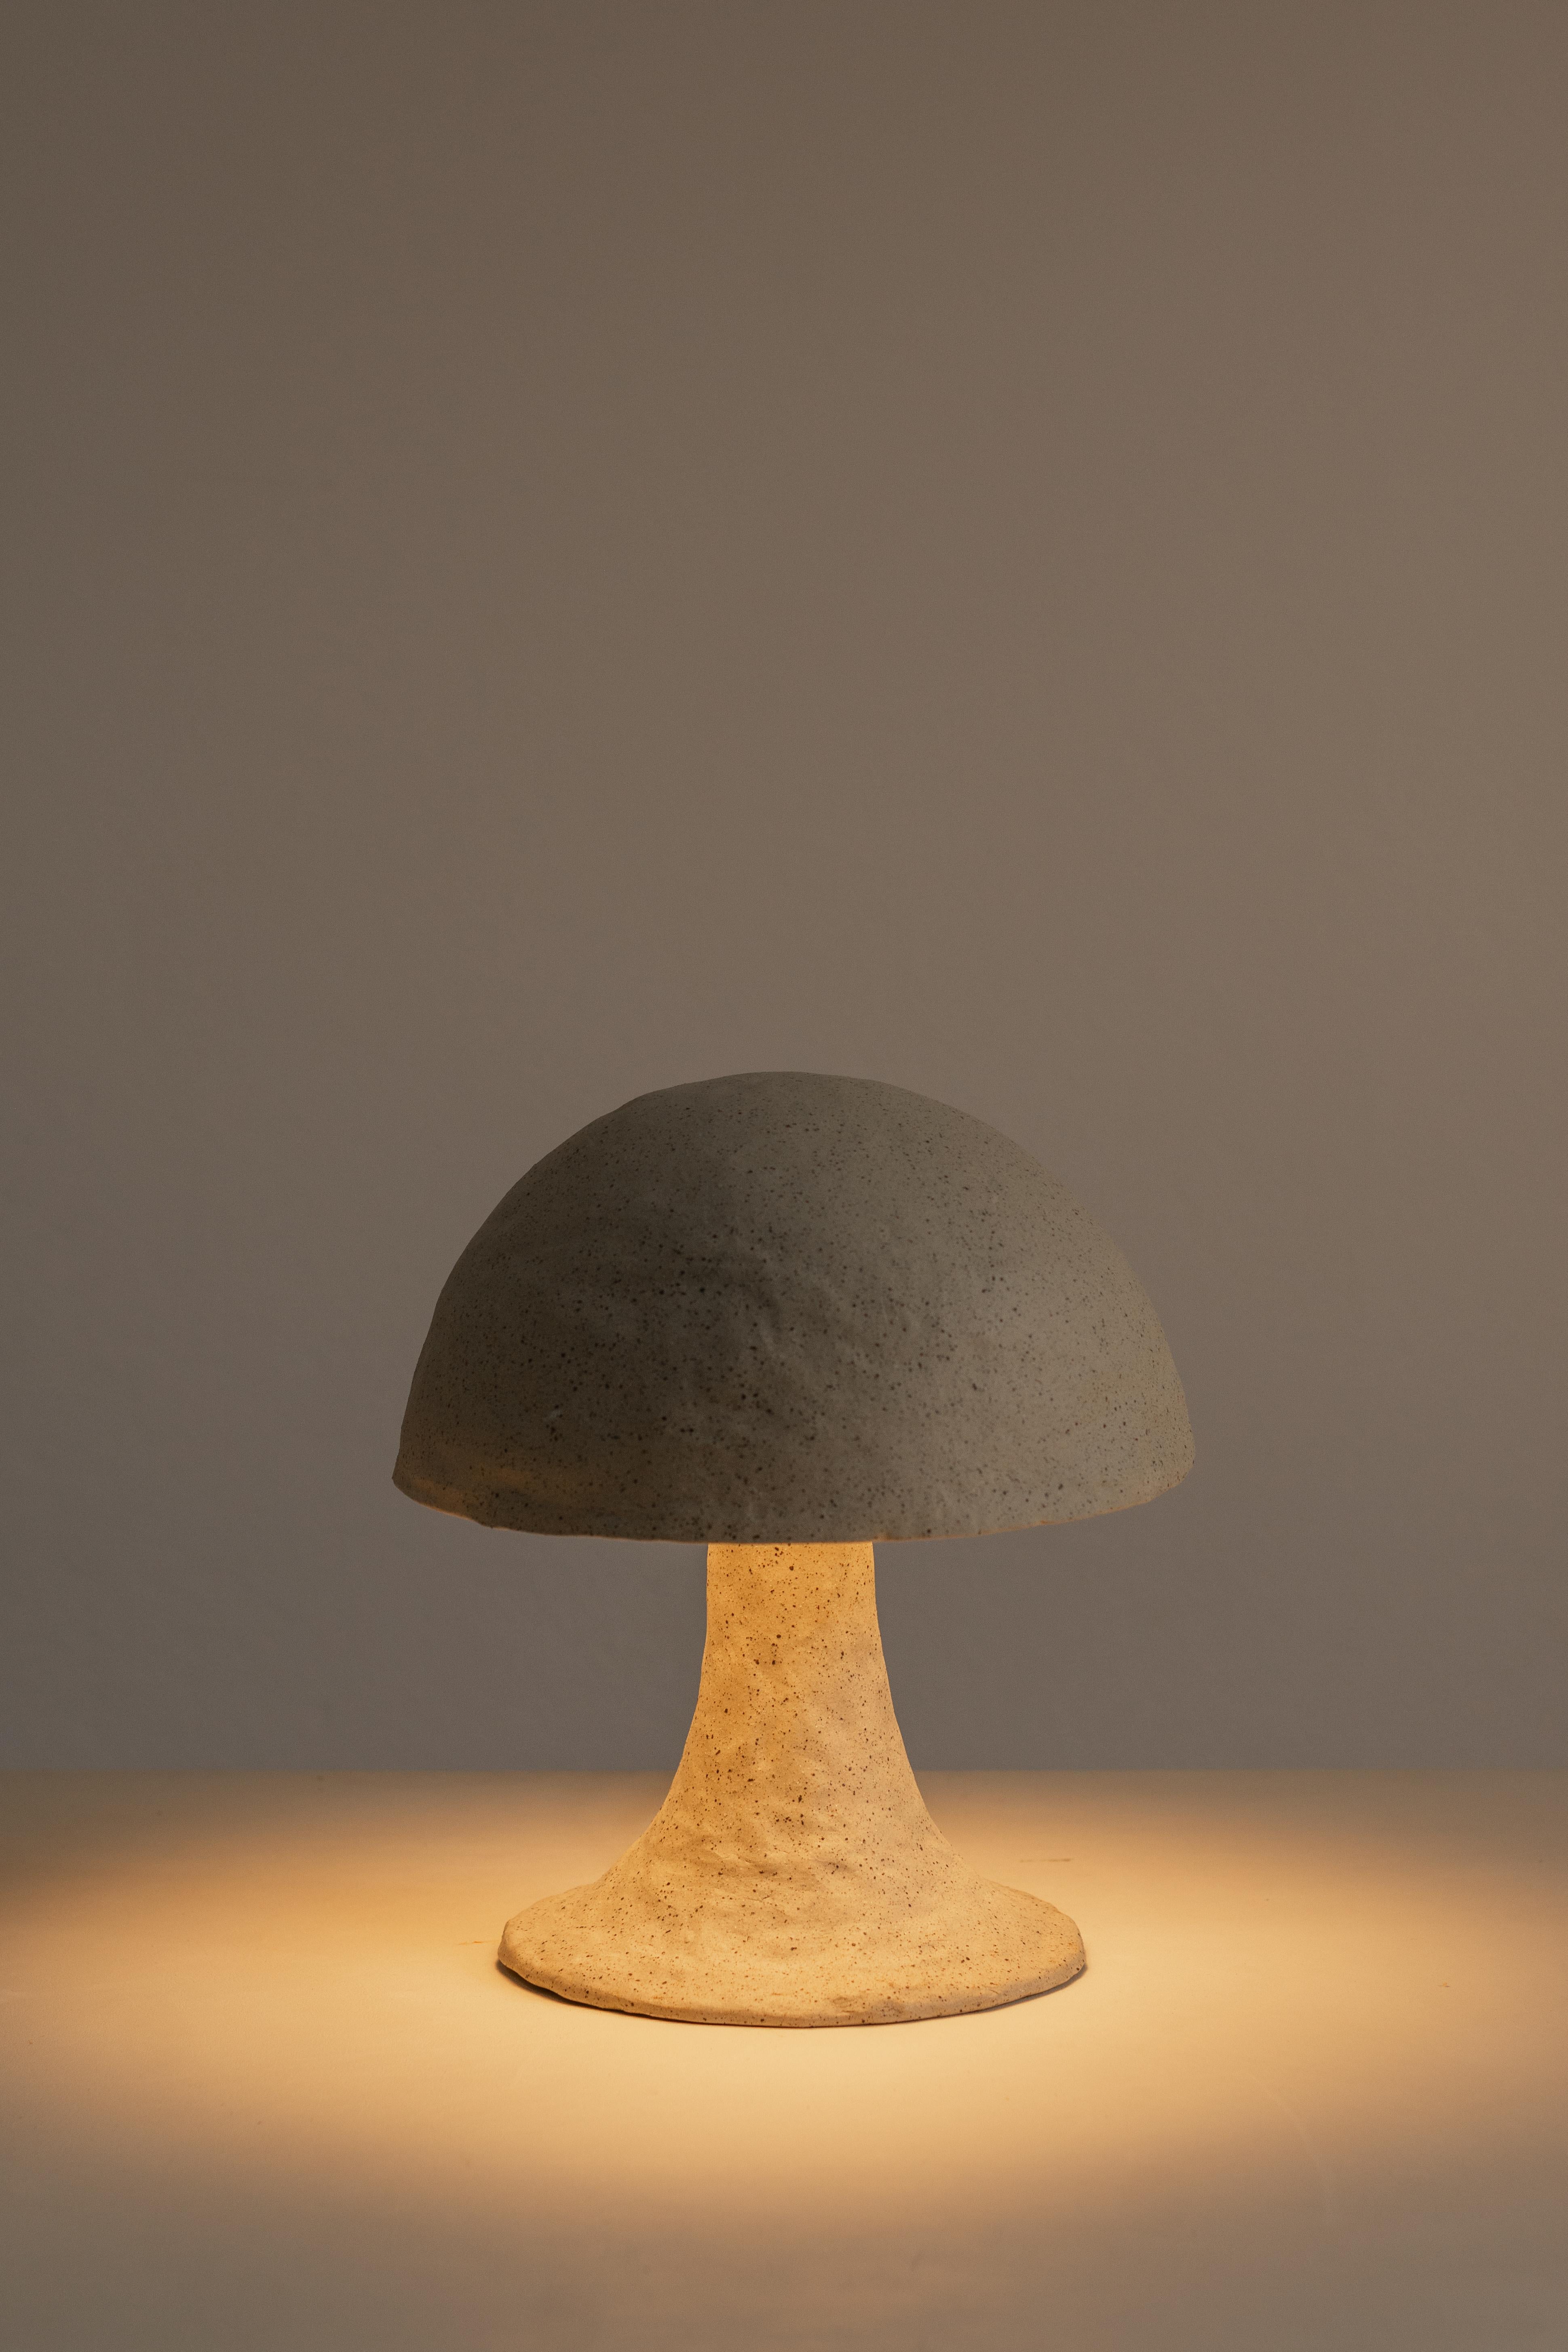 La lampe en céramique Amanita Muscaria est un témoignage de l'art et de l'ingéniosité de l'esprit humain. Son design unique, inspiré du champignon enchanteur de la forêt, crée une ambiance d'un autre monde qui nous invite à renouer avec les